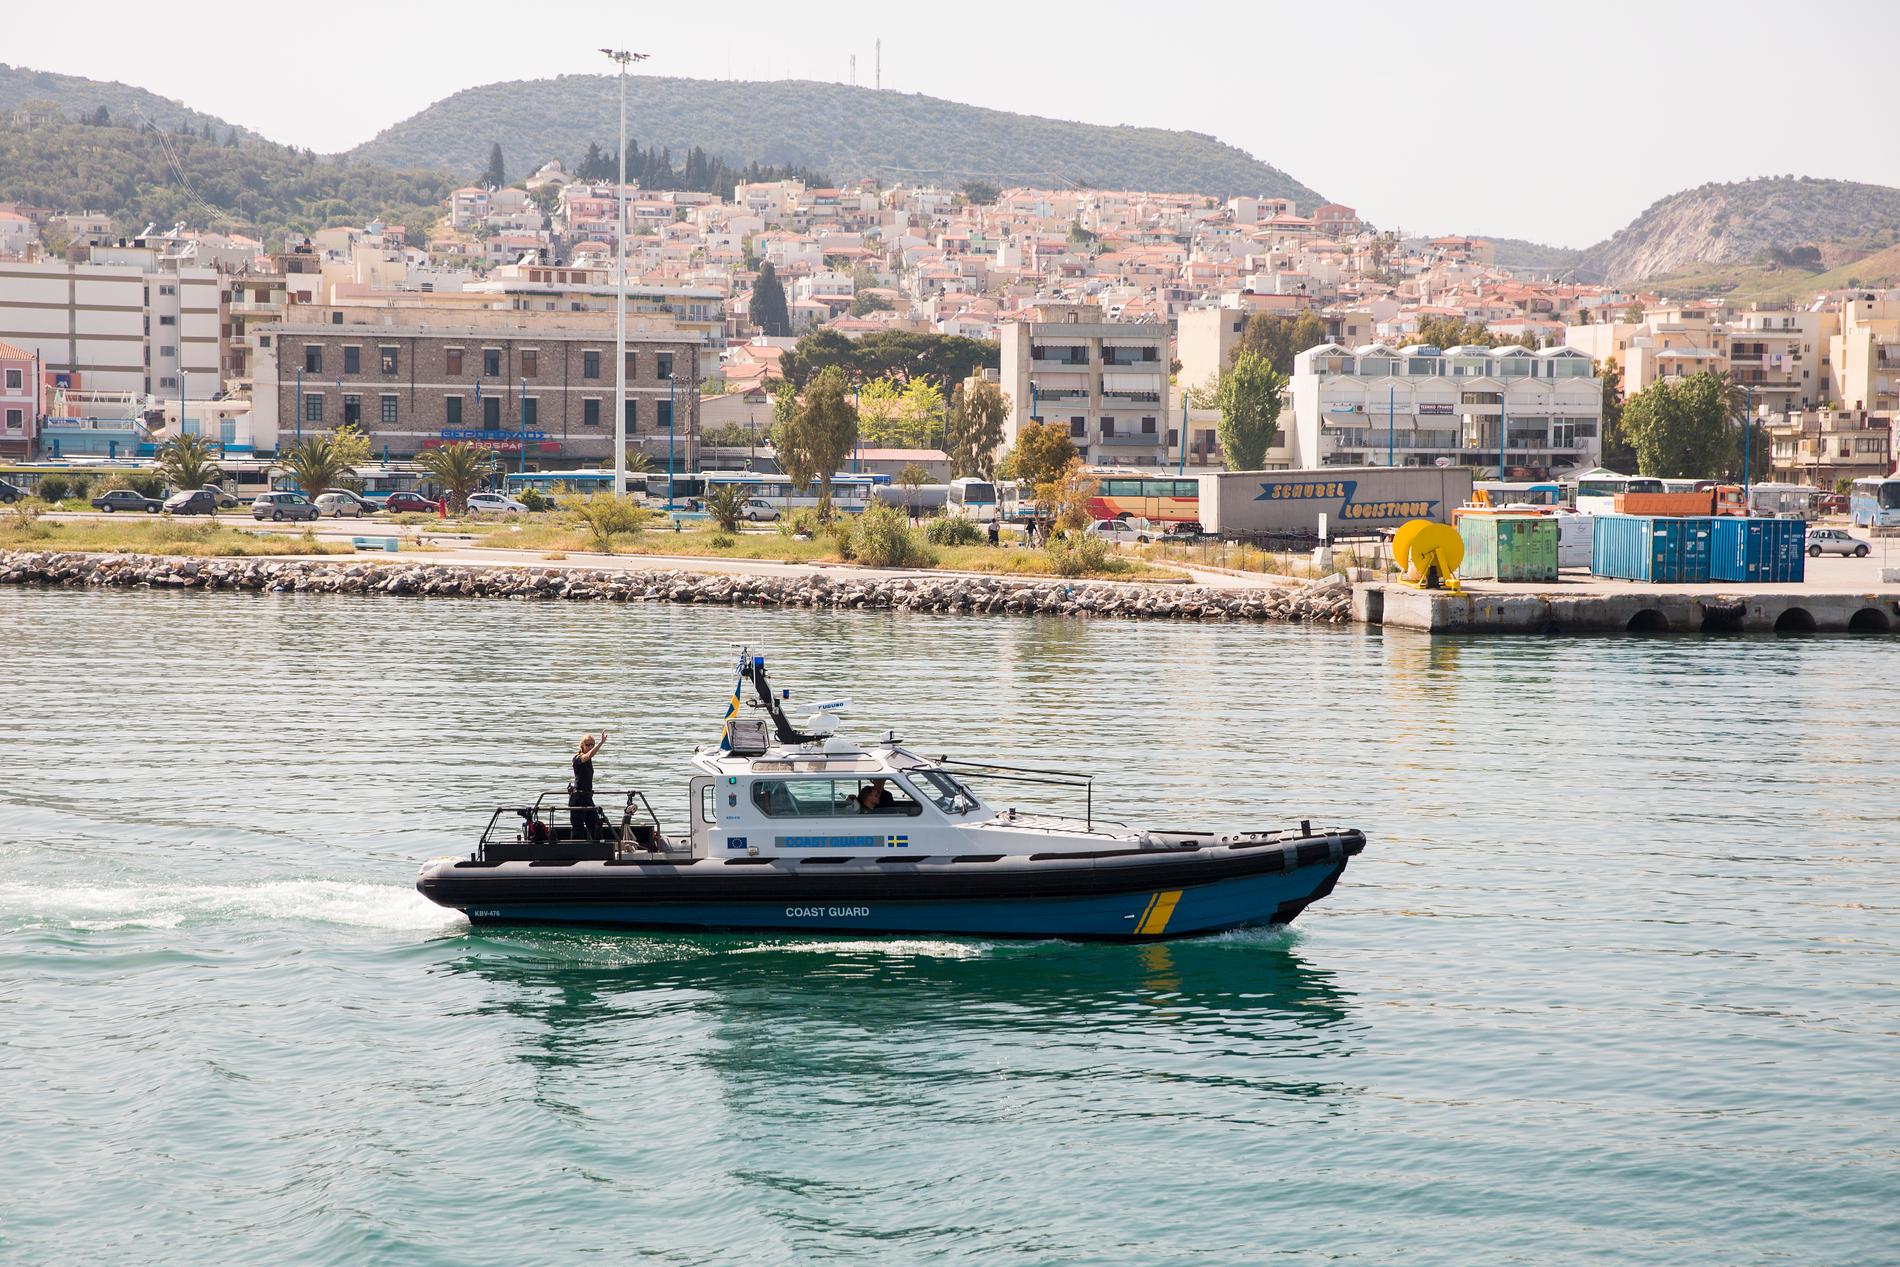 En svensk kustbevakningsbåt utanför ön Lesbos, under deltagandet i en Frontex-insats på Medelhavet 2016. Arkivfoto.